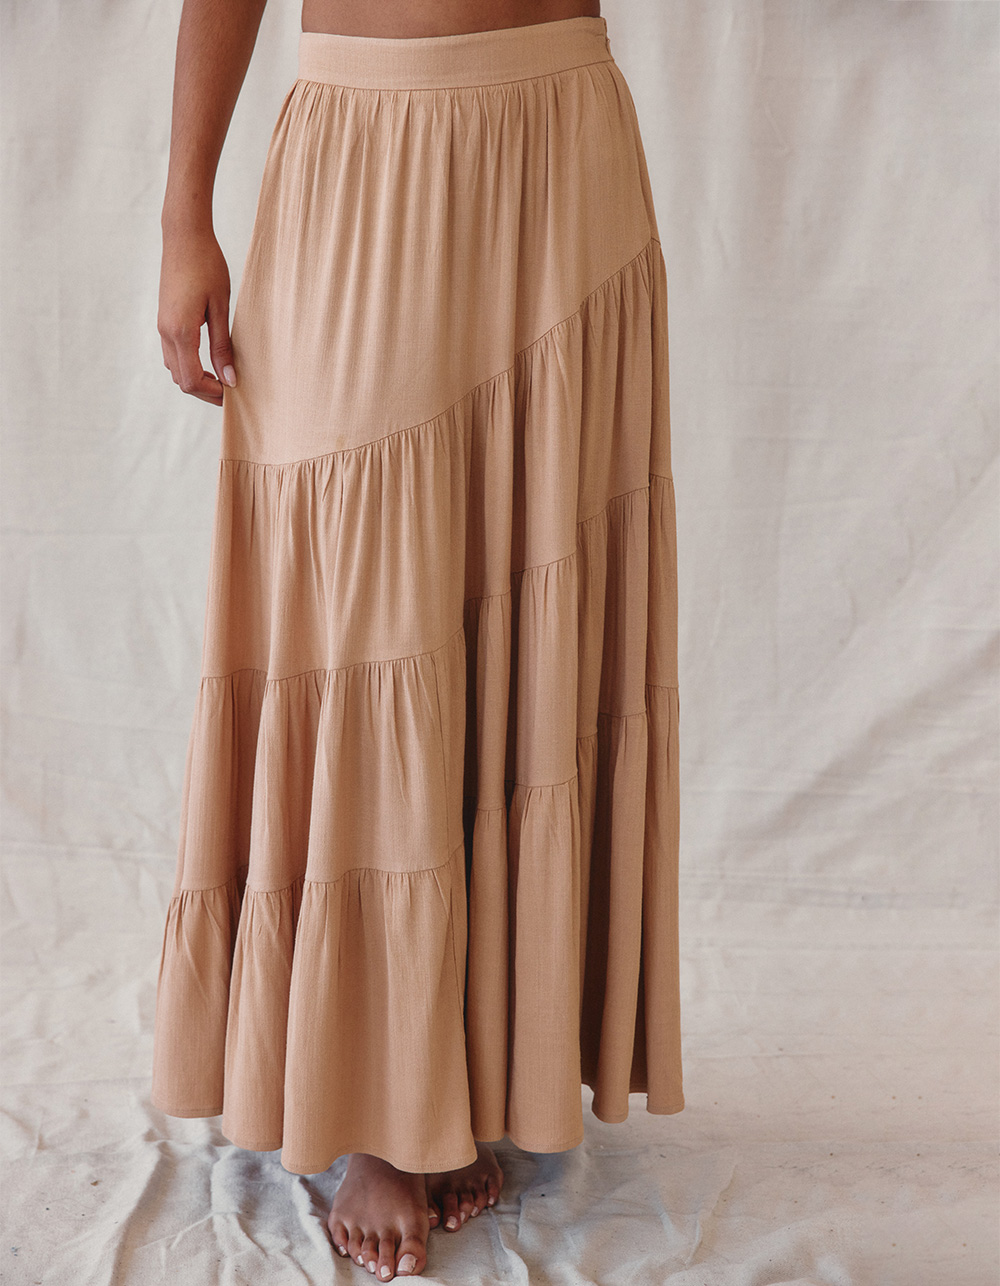 WEST OF MELROSE Ruffle Asymmetrical Womens Maxi Skirt - TAN | Tillys | Röcke